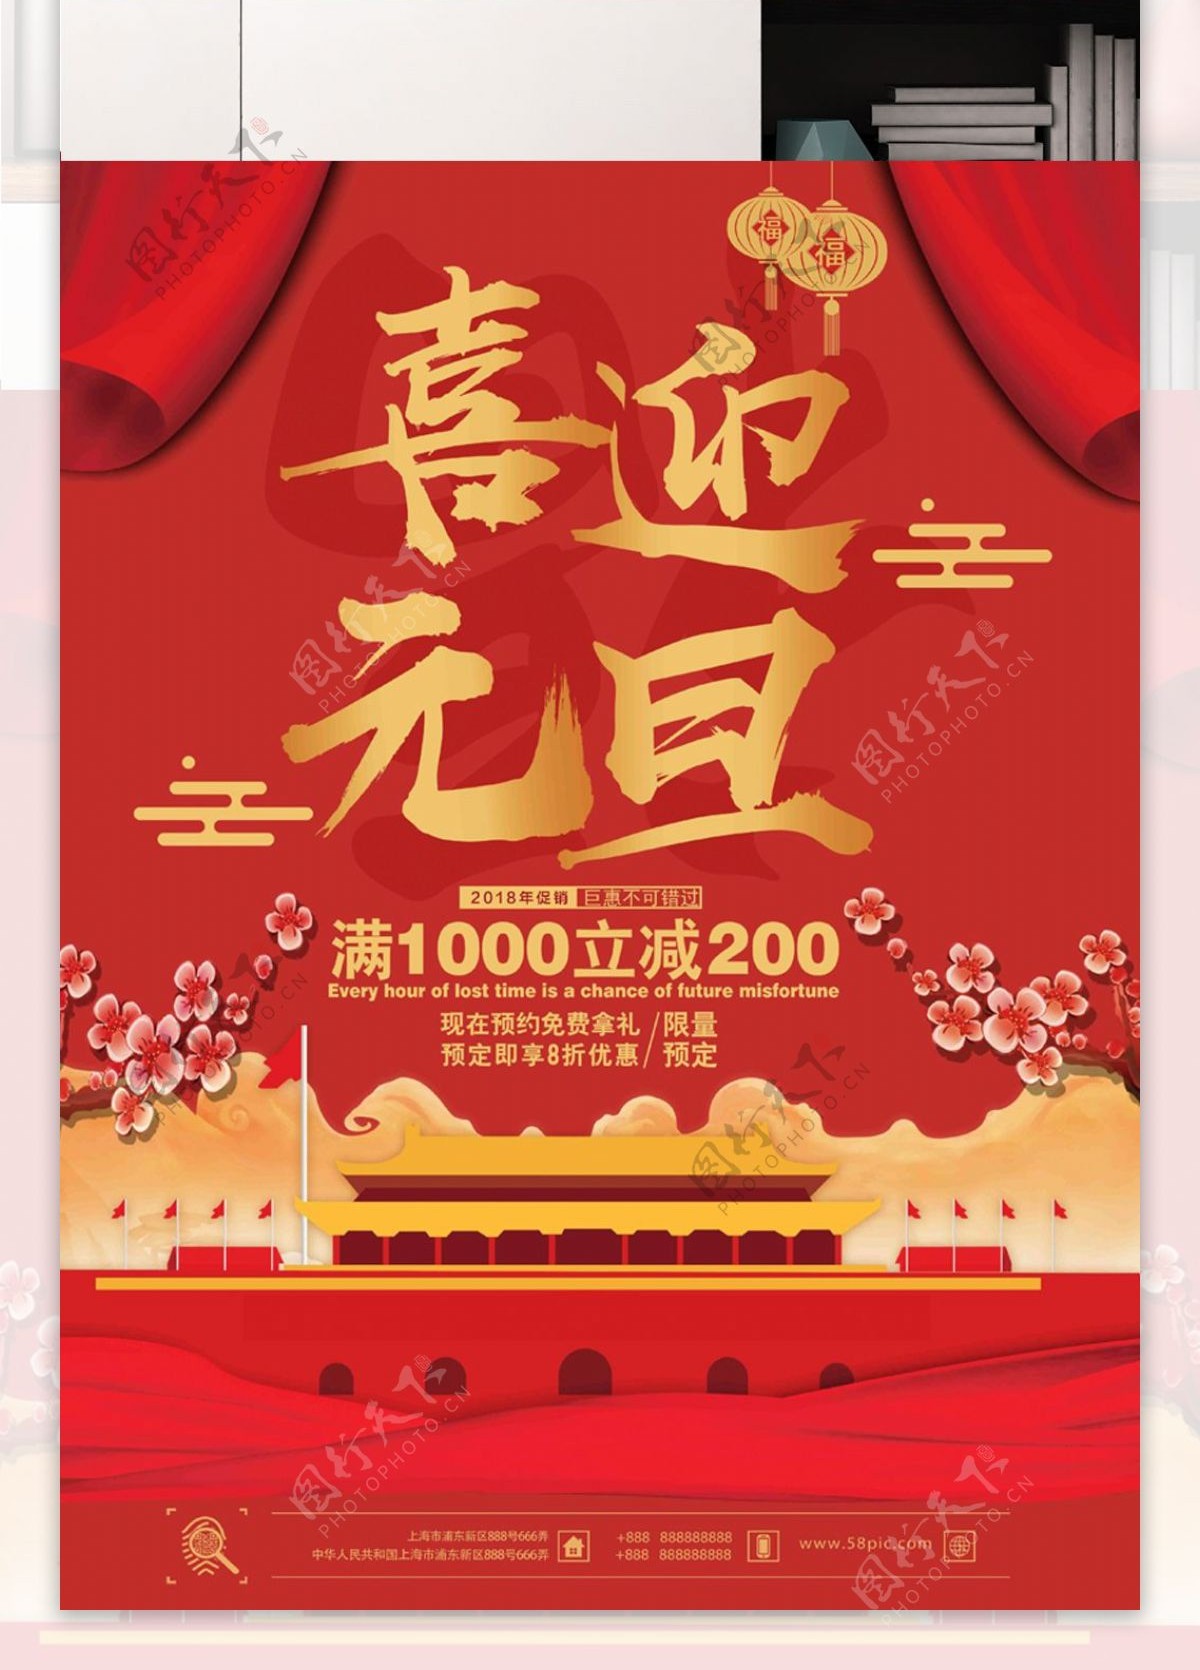 中国红喜庆大气喜迎元旦天安门梅花促销海报